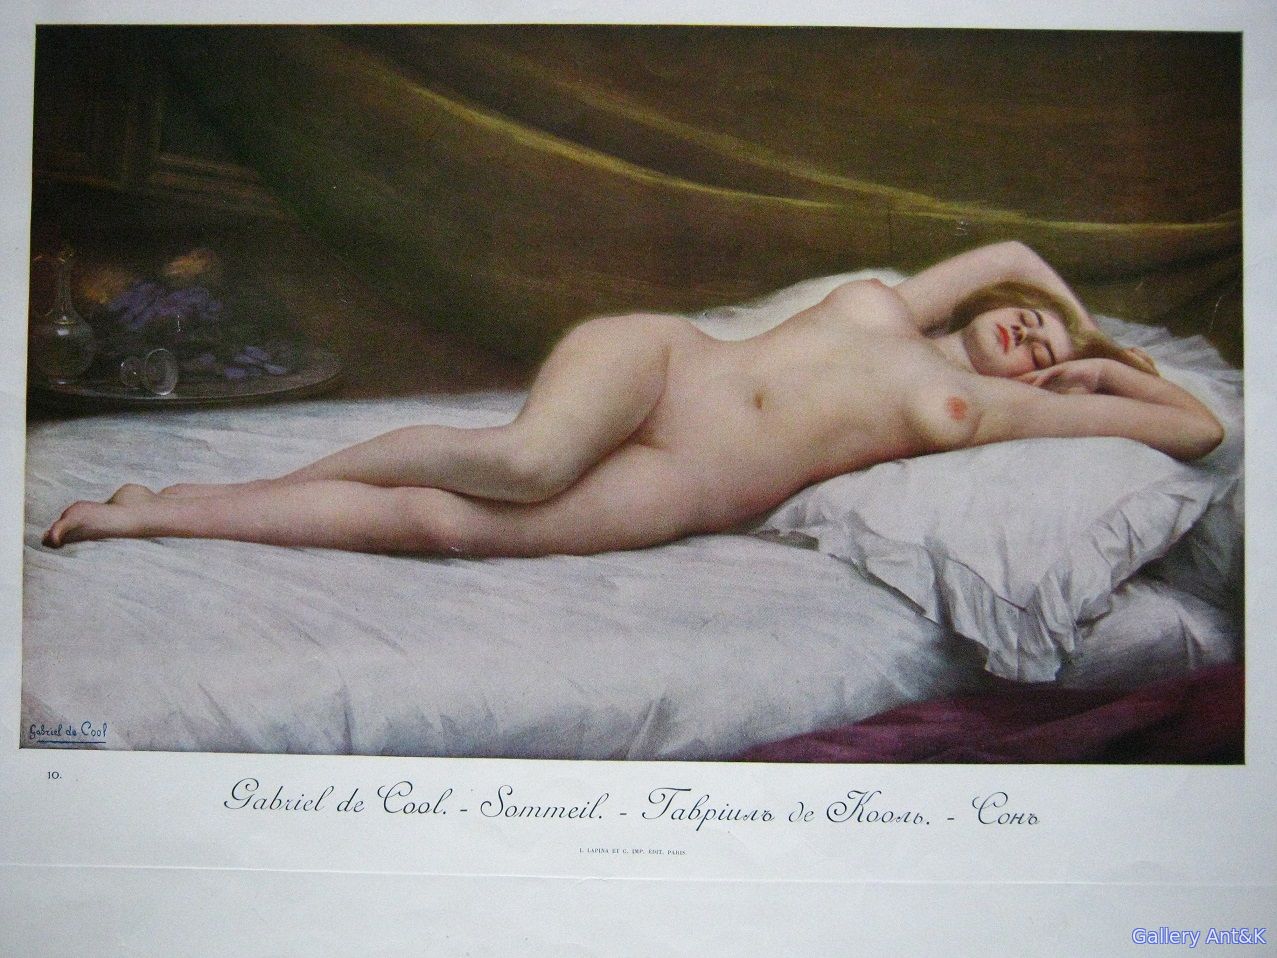 "Женская красота в искусстве", репродукции картин, начало ХХ века